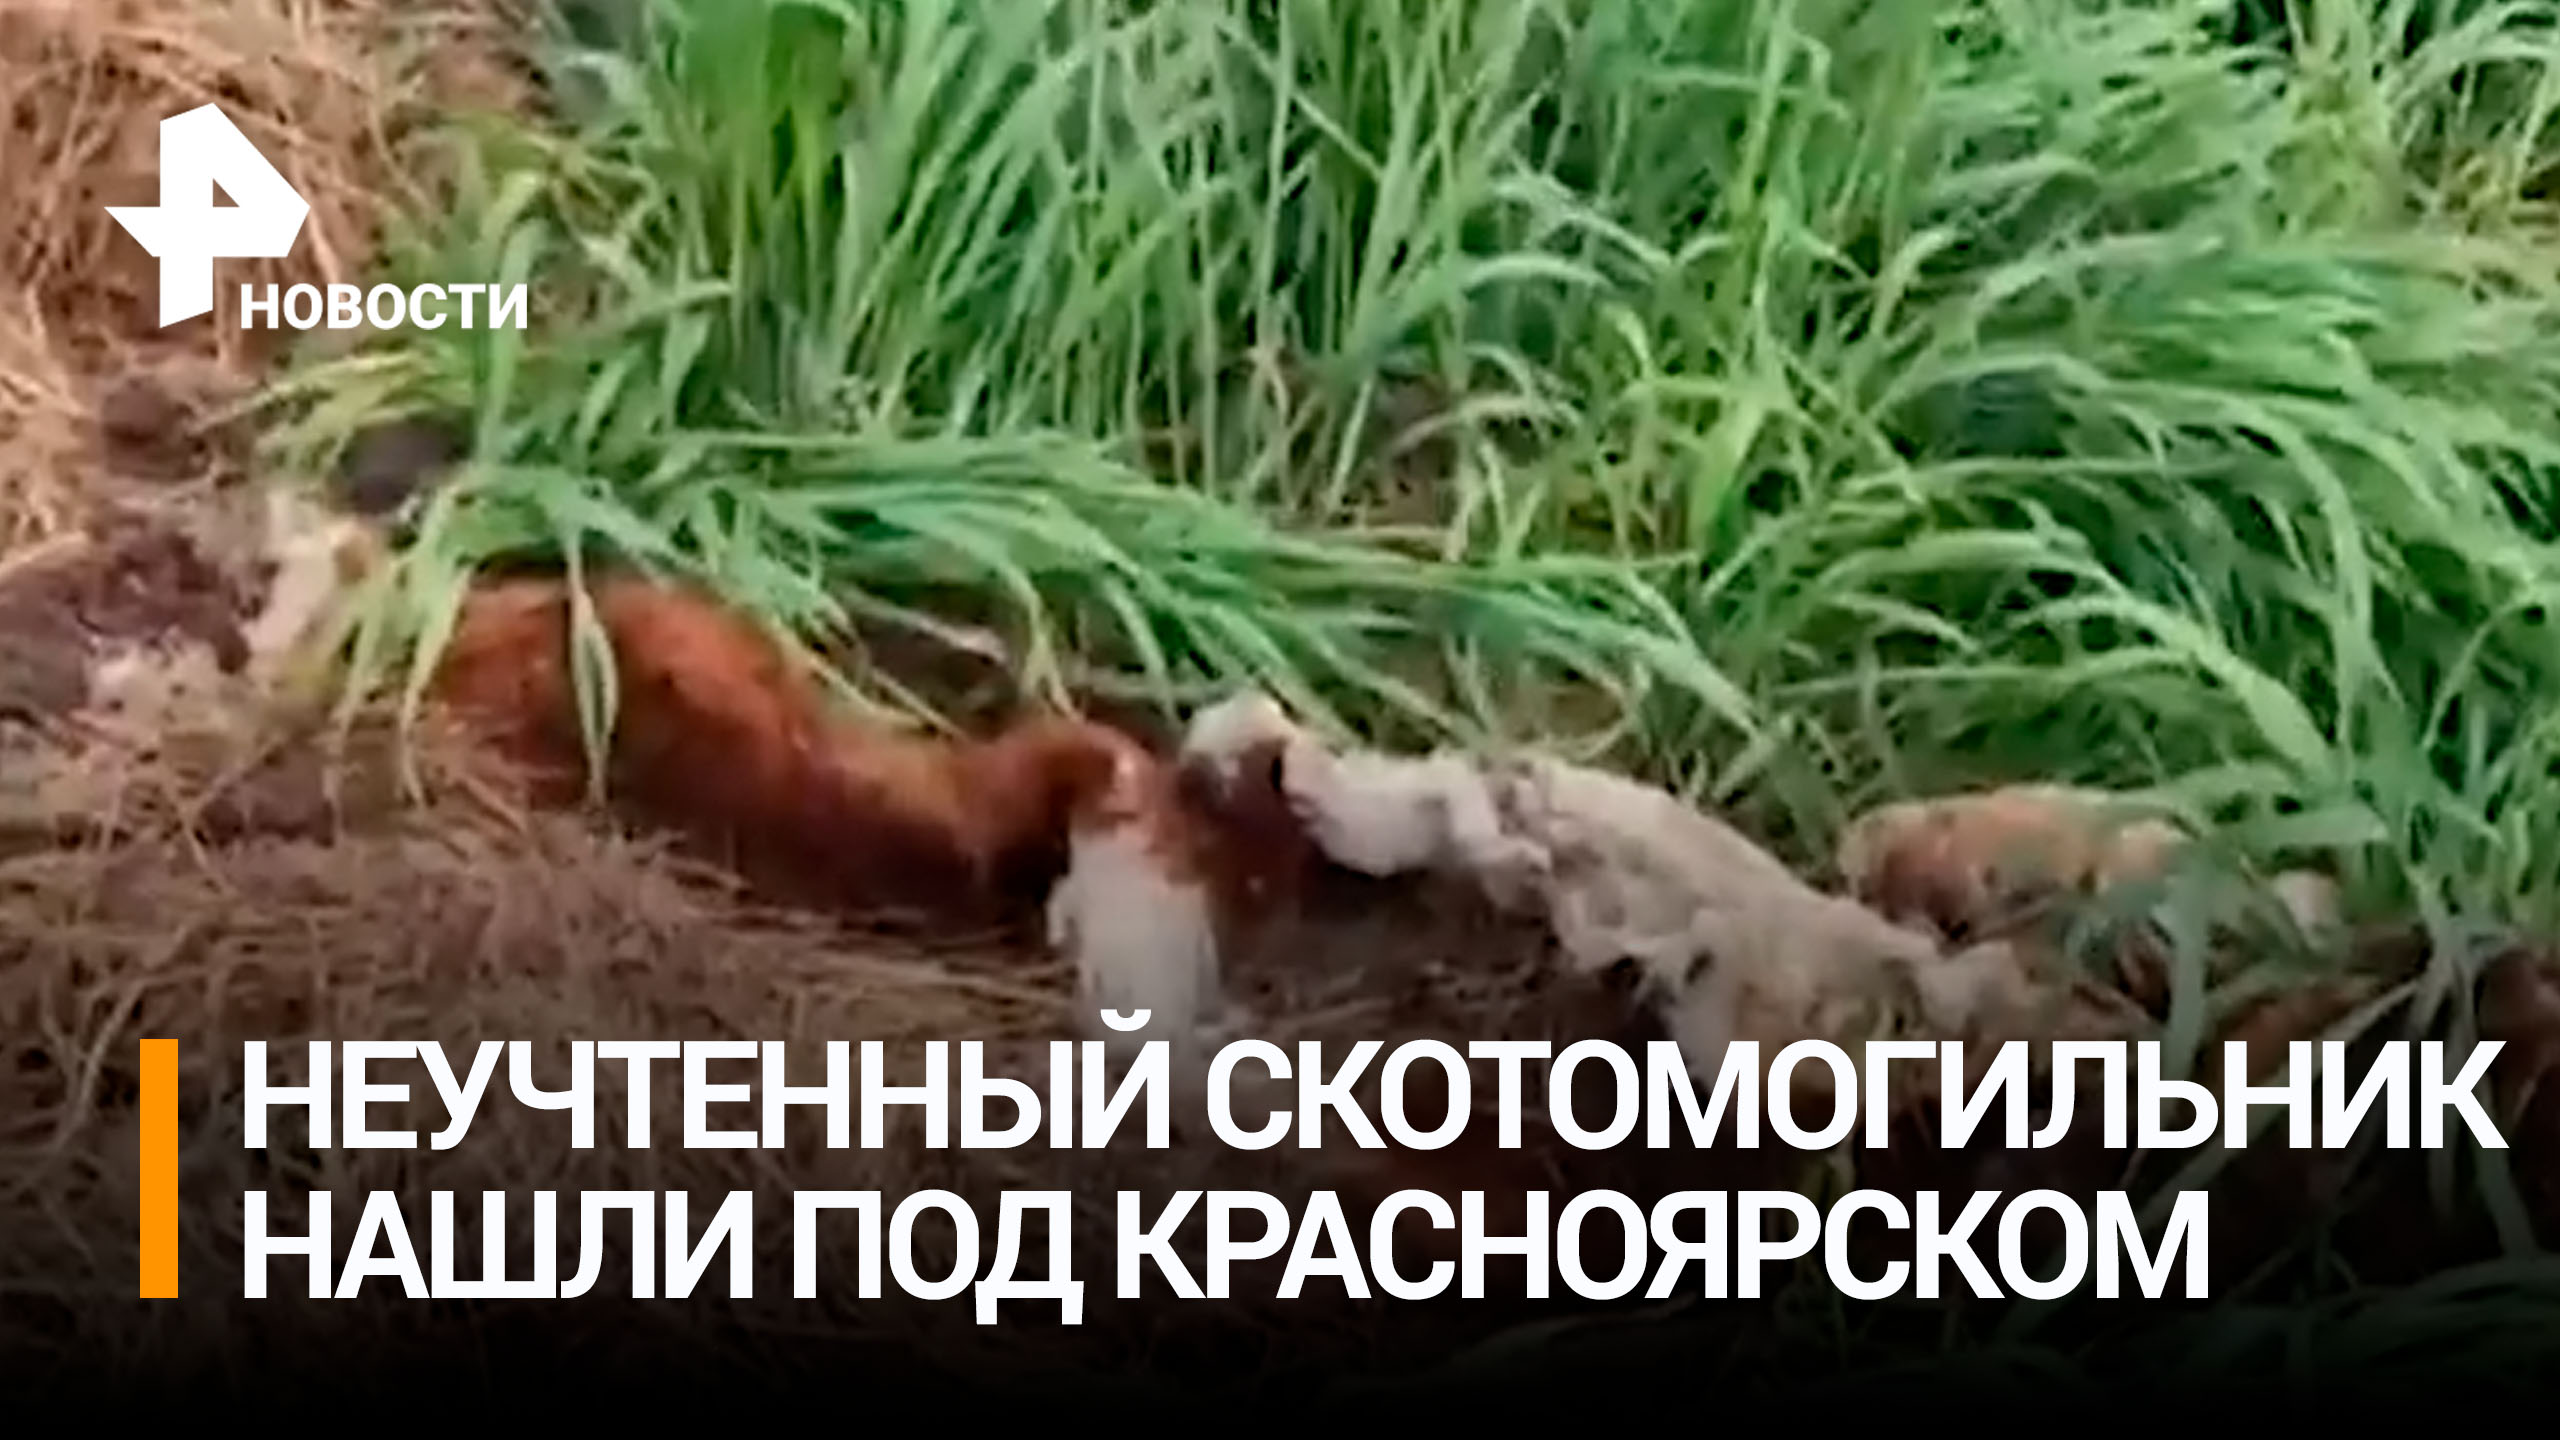 Скотомогильник обнаружили рядом с жилыми домами под Красноярском / РЕН Новости